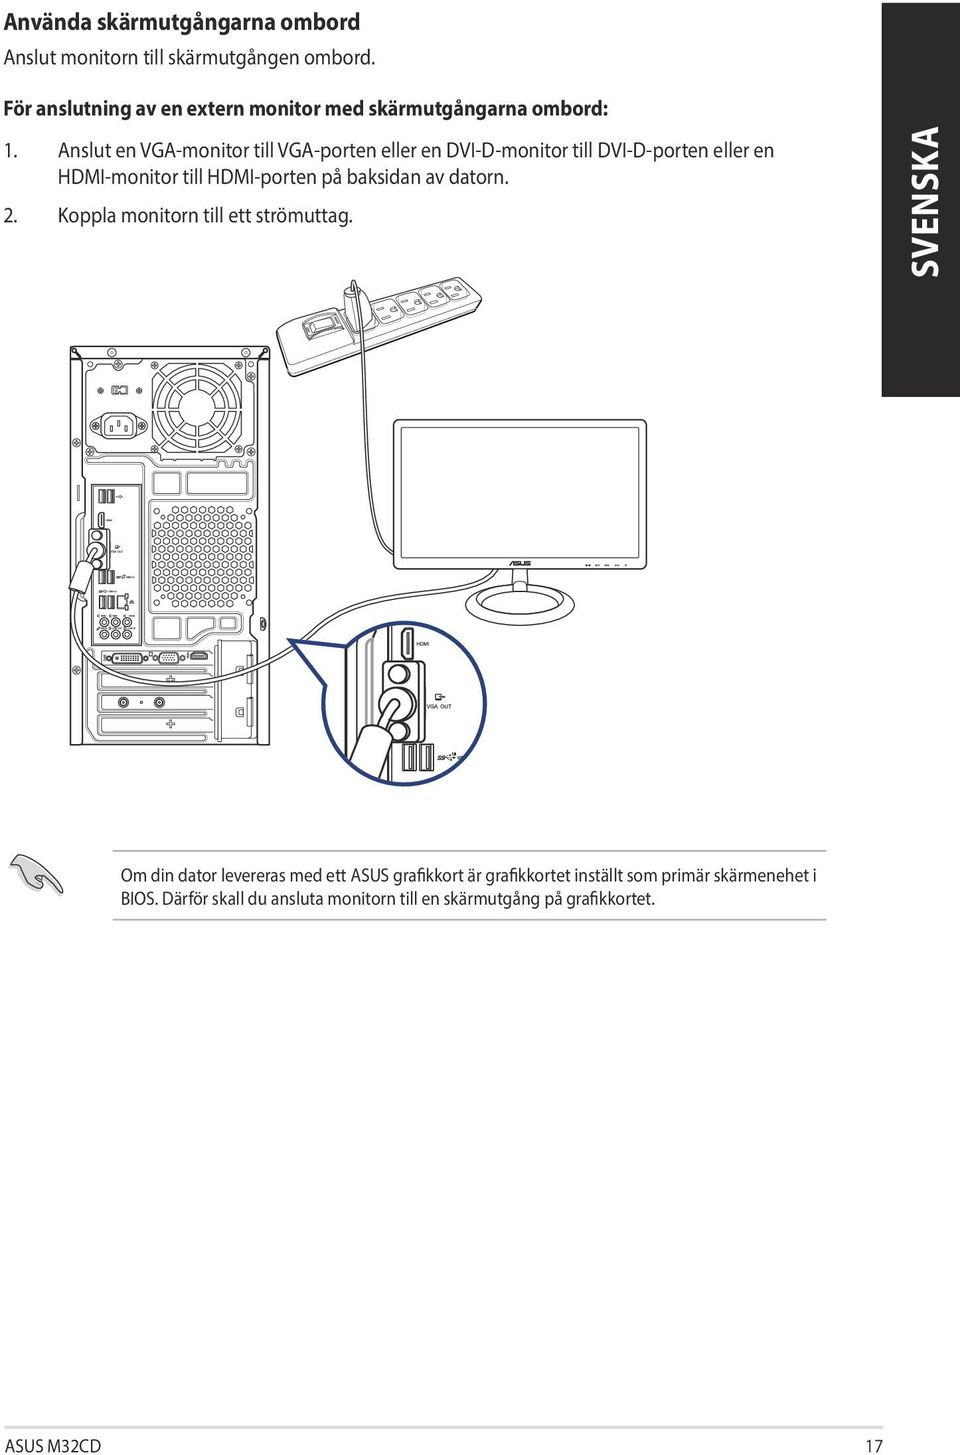 Anslut en VGA-monitor till VGA-porten eller en DVI-D-monitor till DVI-D-porten eller en HDMI-monitor till HDMI-porten på